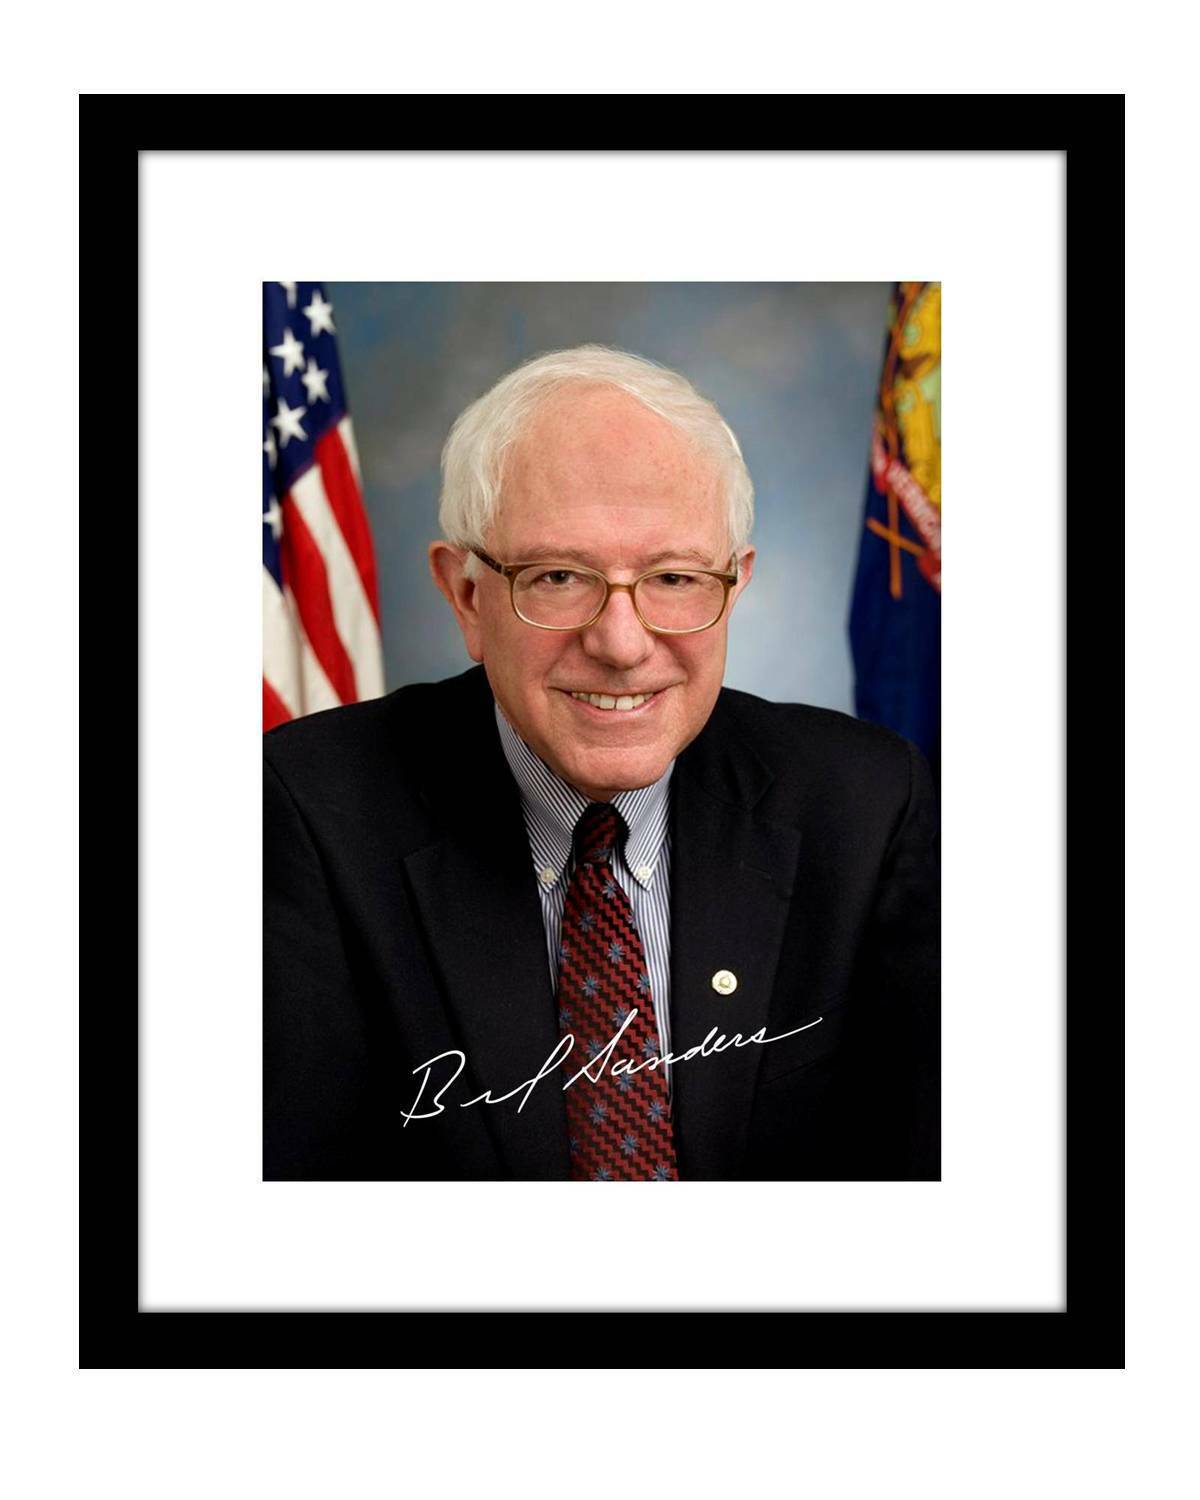 Bernie Sanders 8x10 Signed Photo Print official portrait autographed democrat